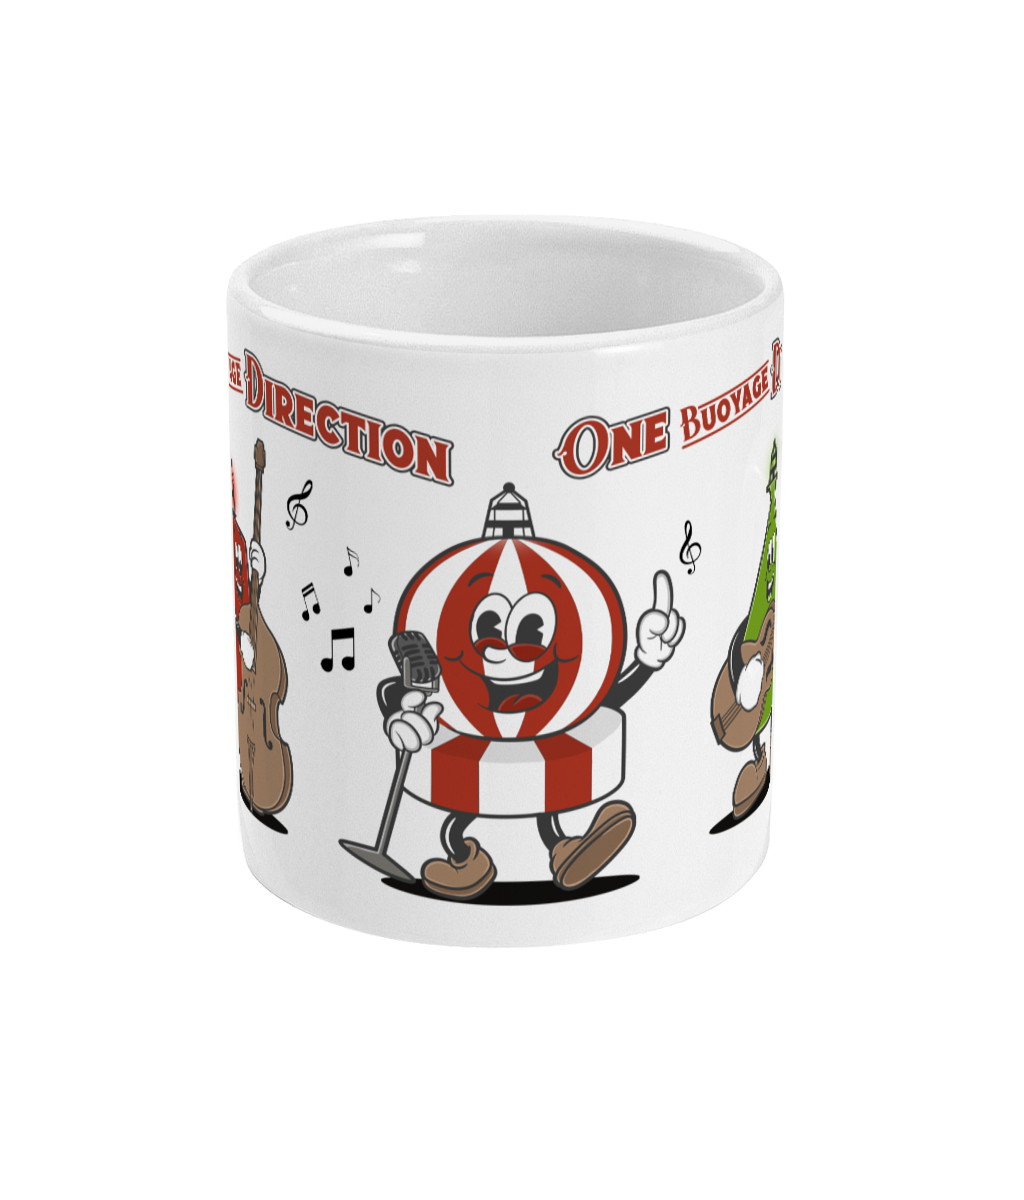 Buoy band mug, 'One Buoyage Direction'